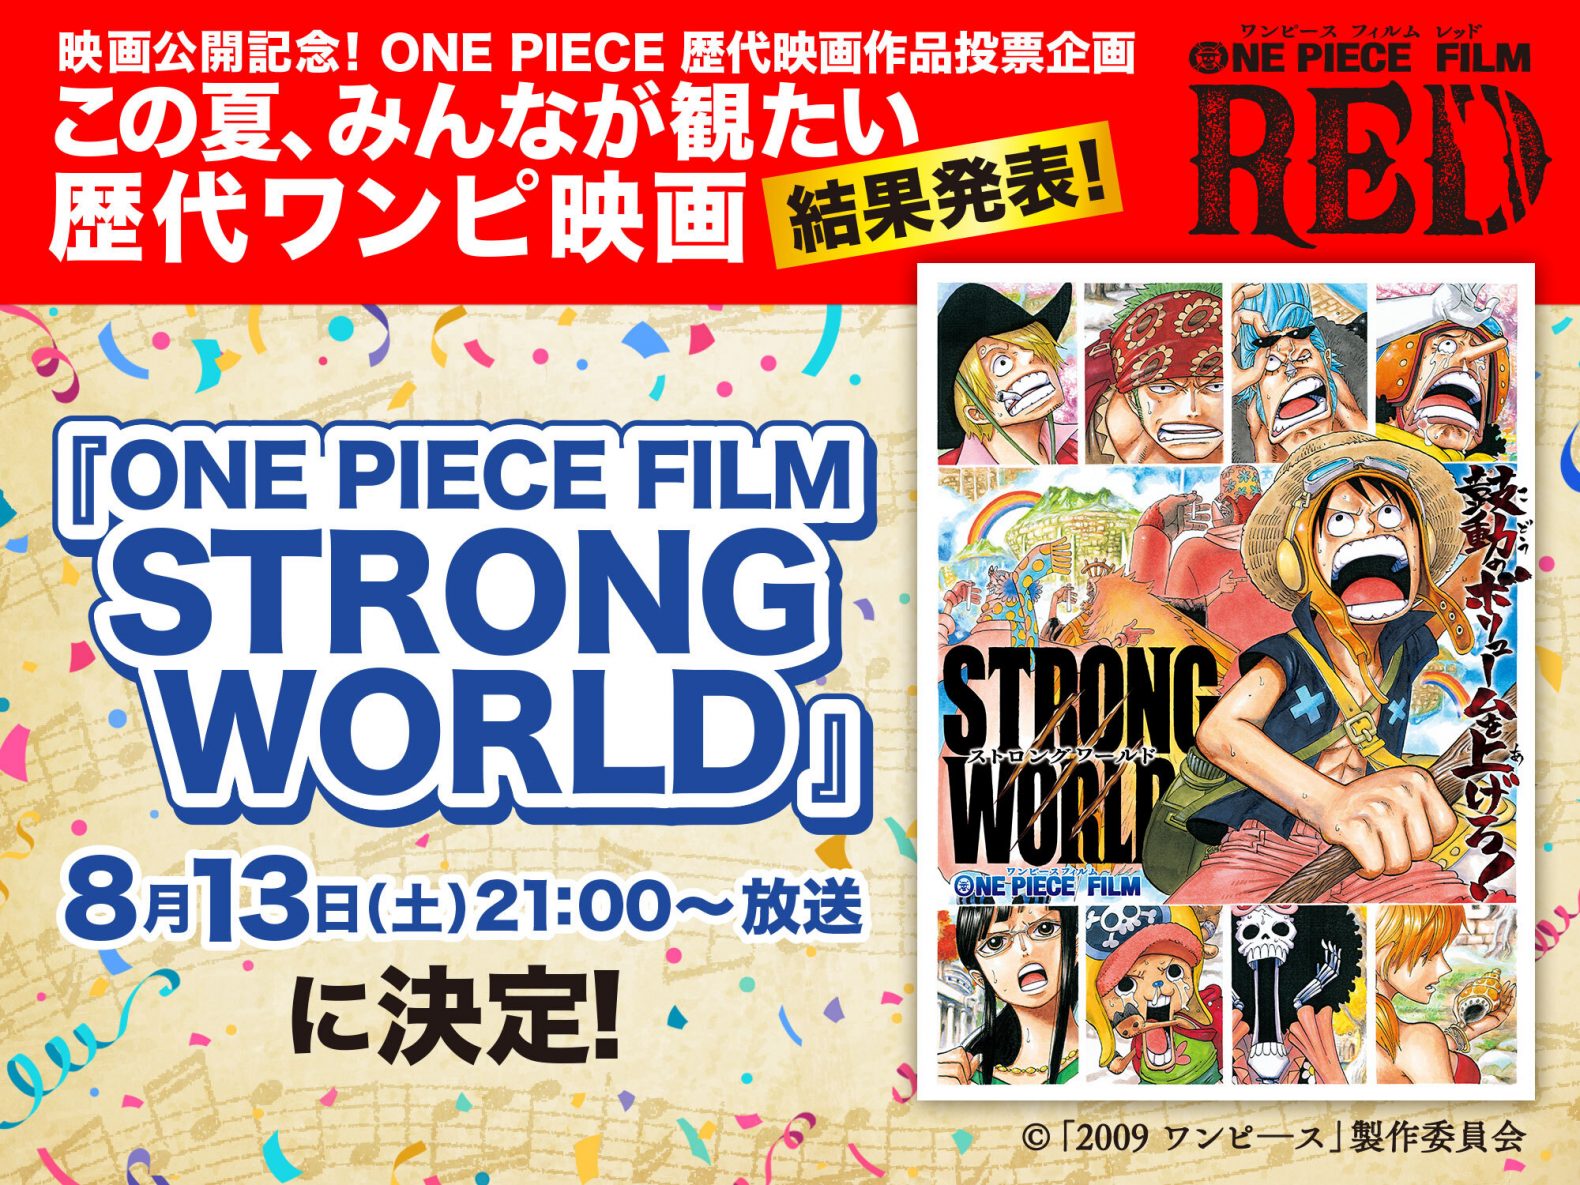 8月13日放送 土曜プレミアム One Piece Film Strong World に決定 One Piece Film Red 公式サイト